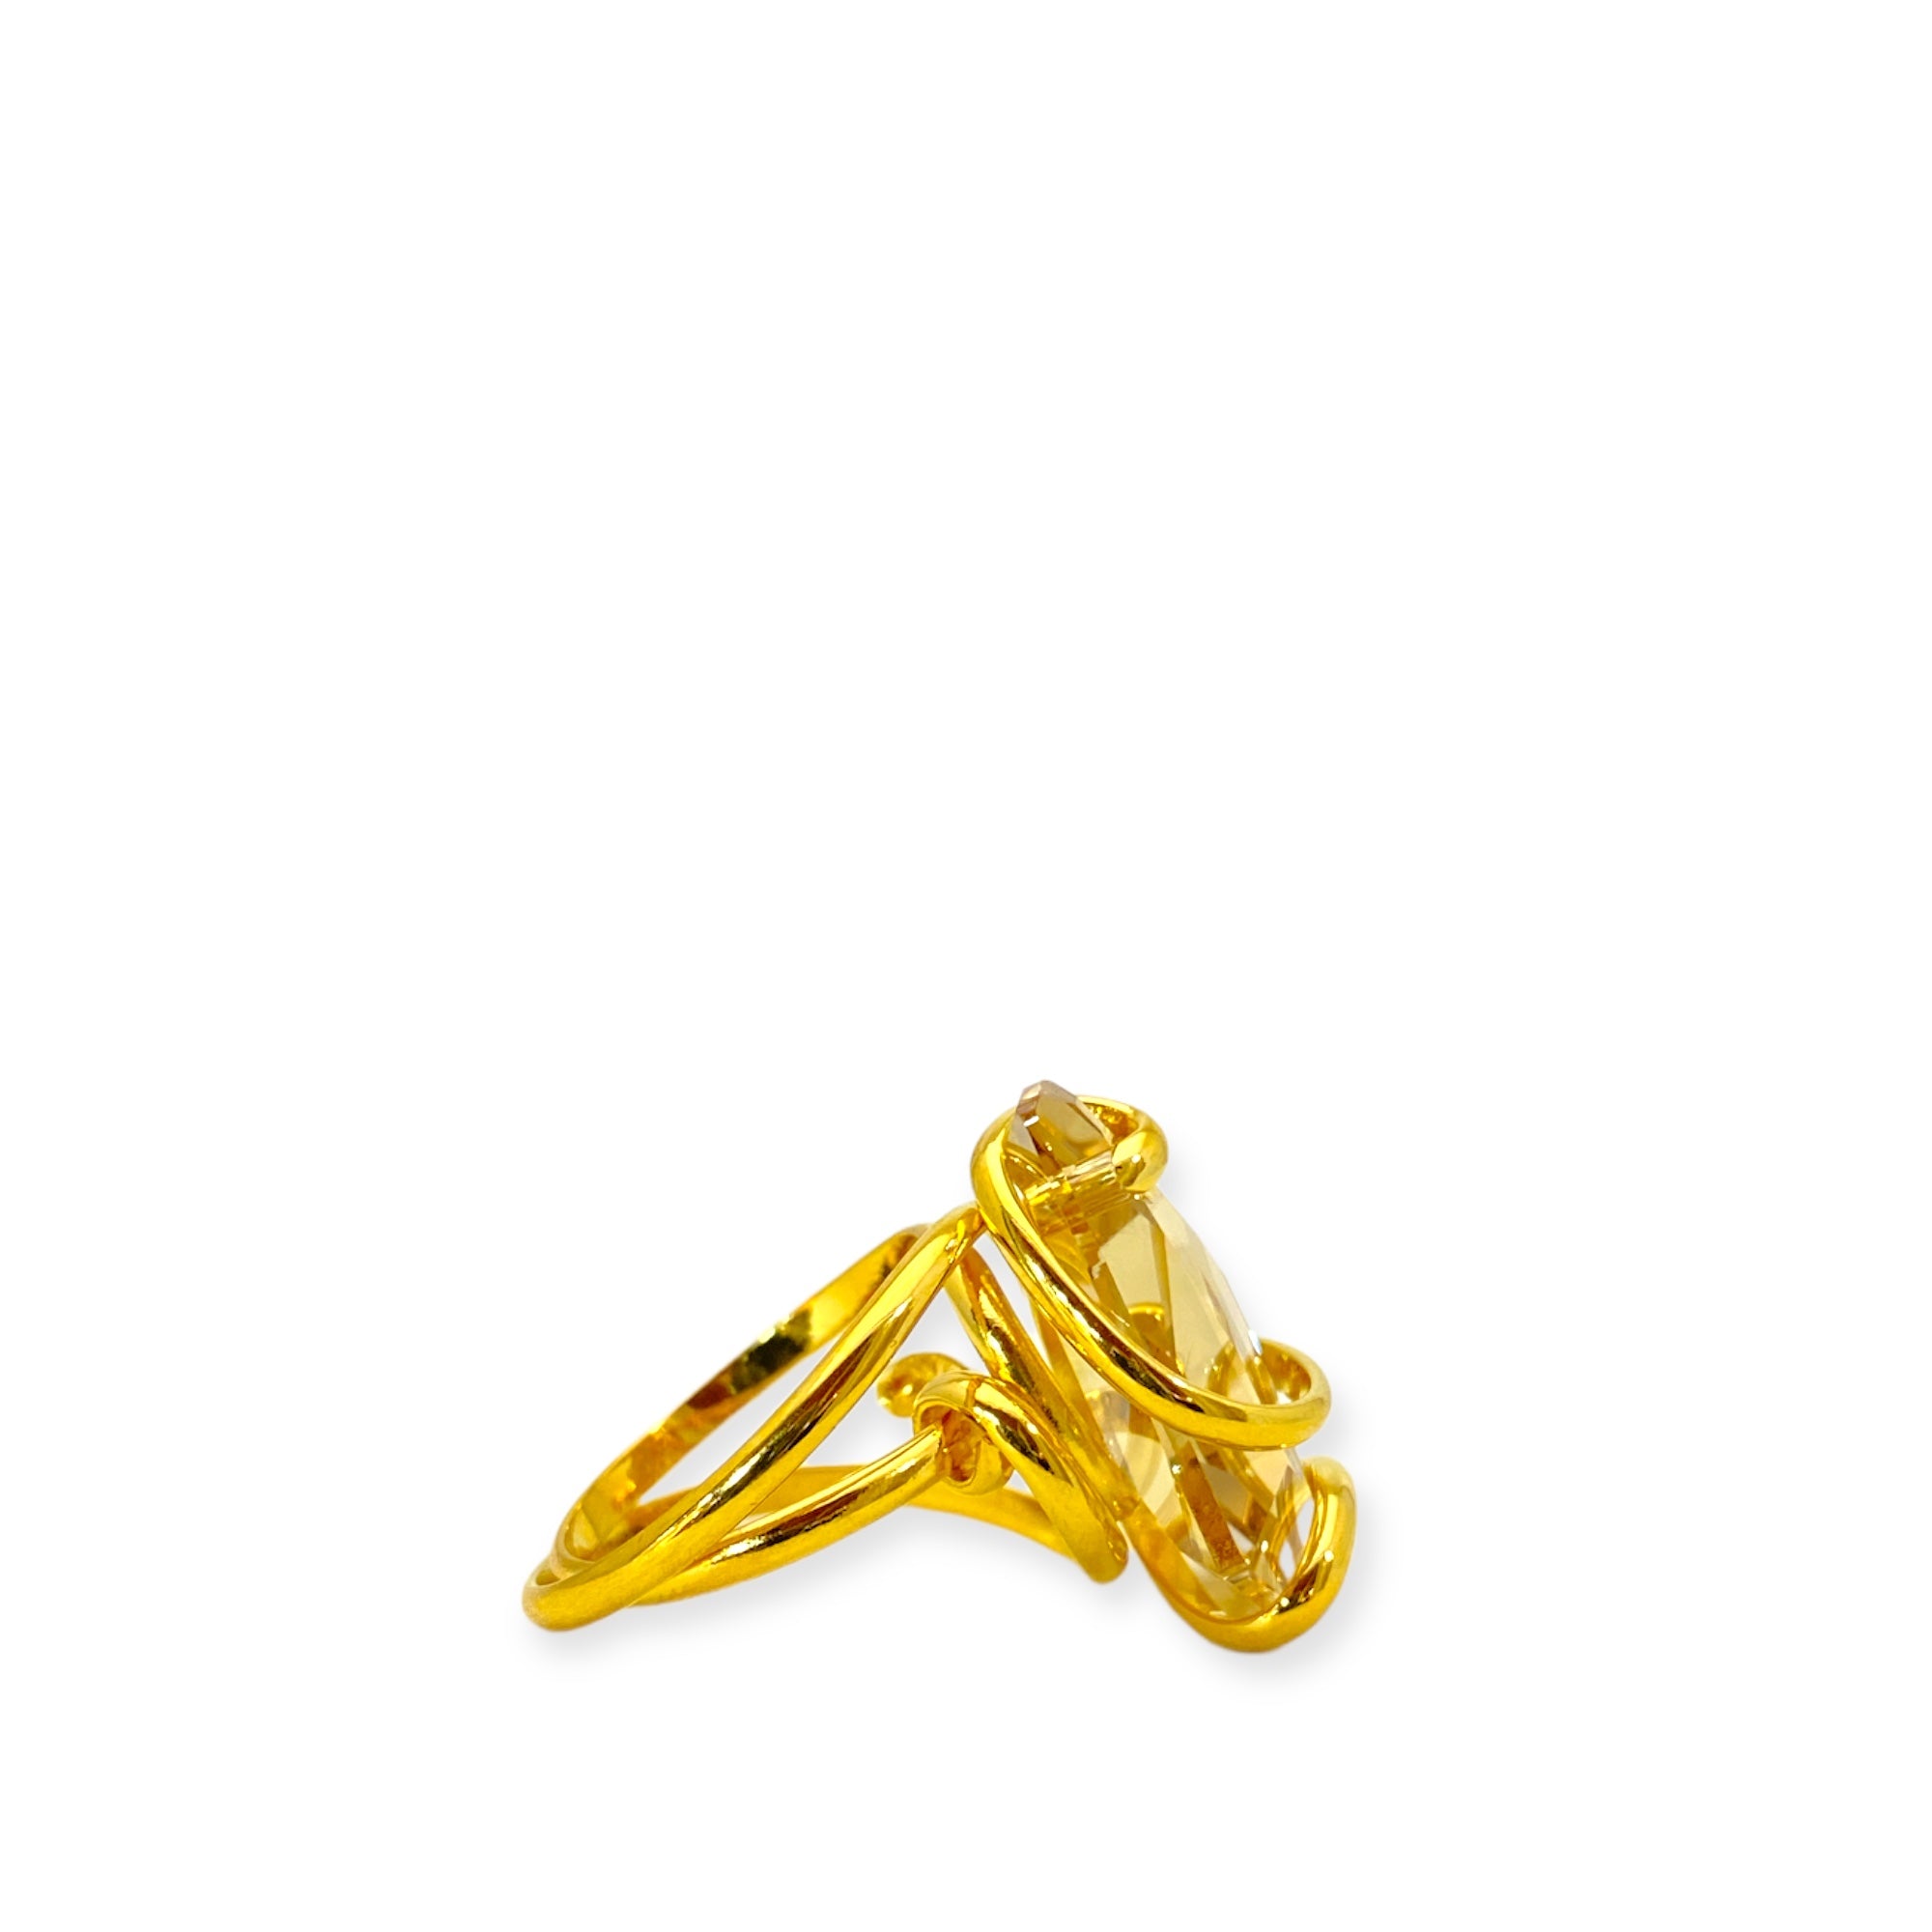 Un prezioso cristallo ispira il design unico di questo straordinario anello realizzato in metallo Placcato Oro.